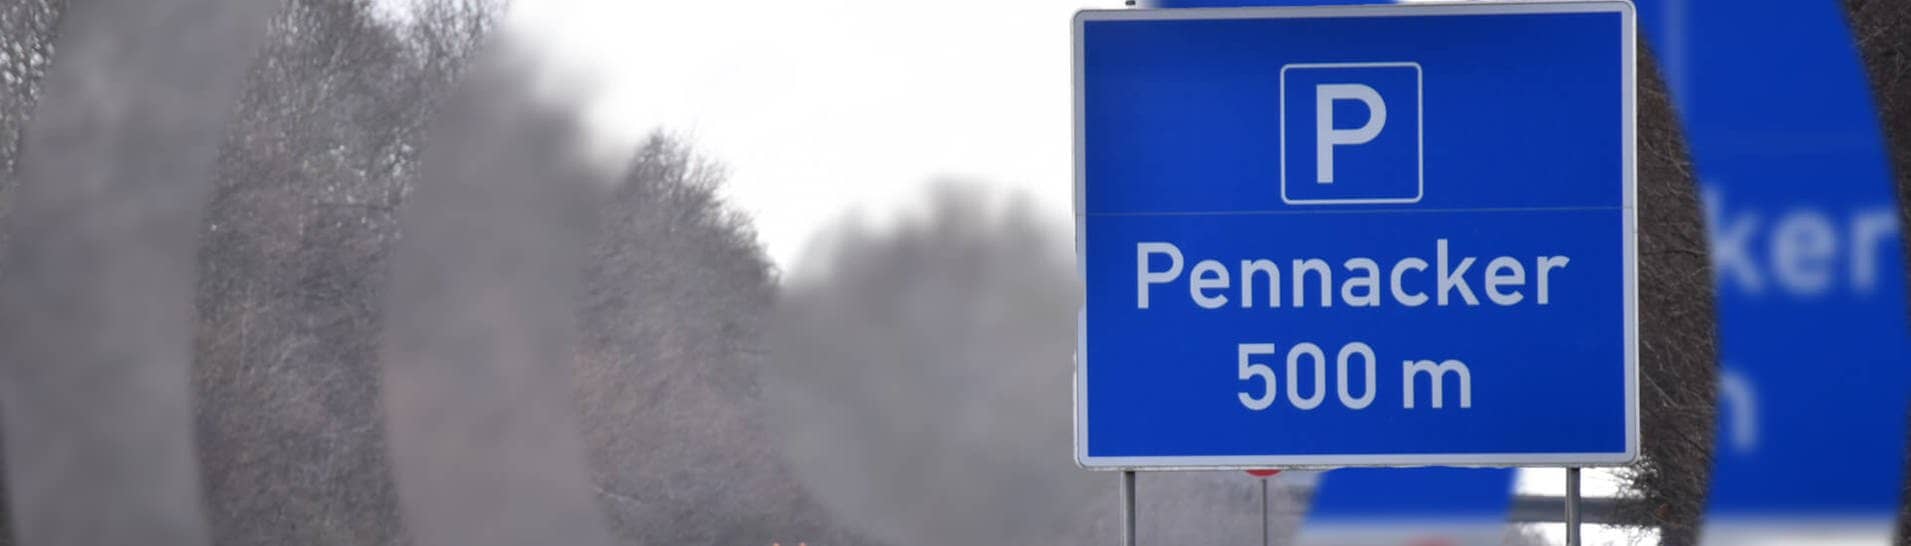 Autobahnparkplatz-Namen Pennacker